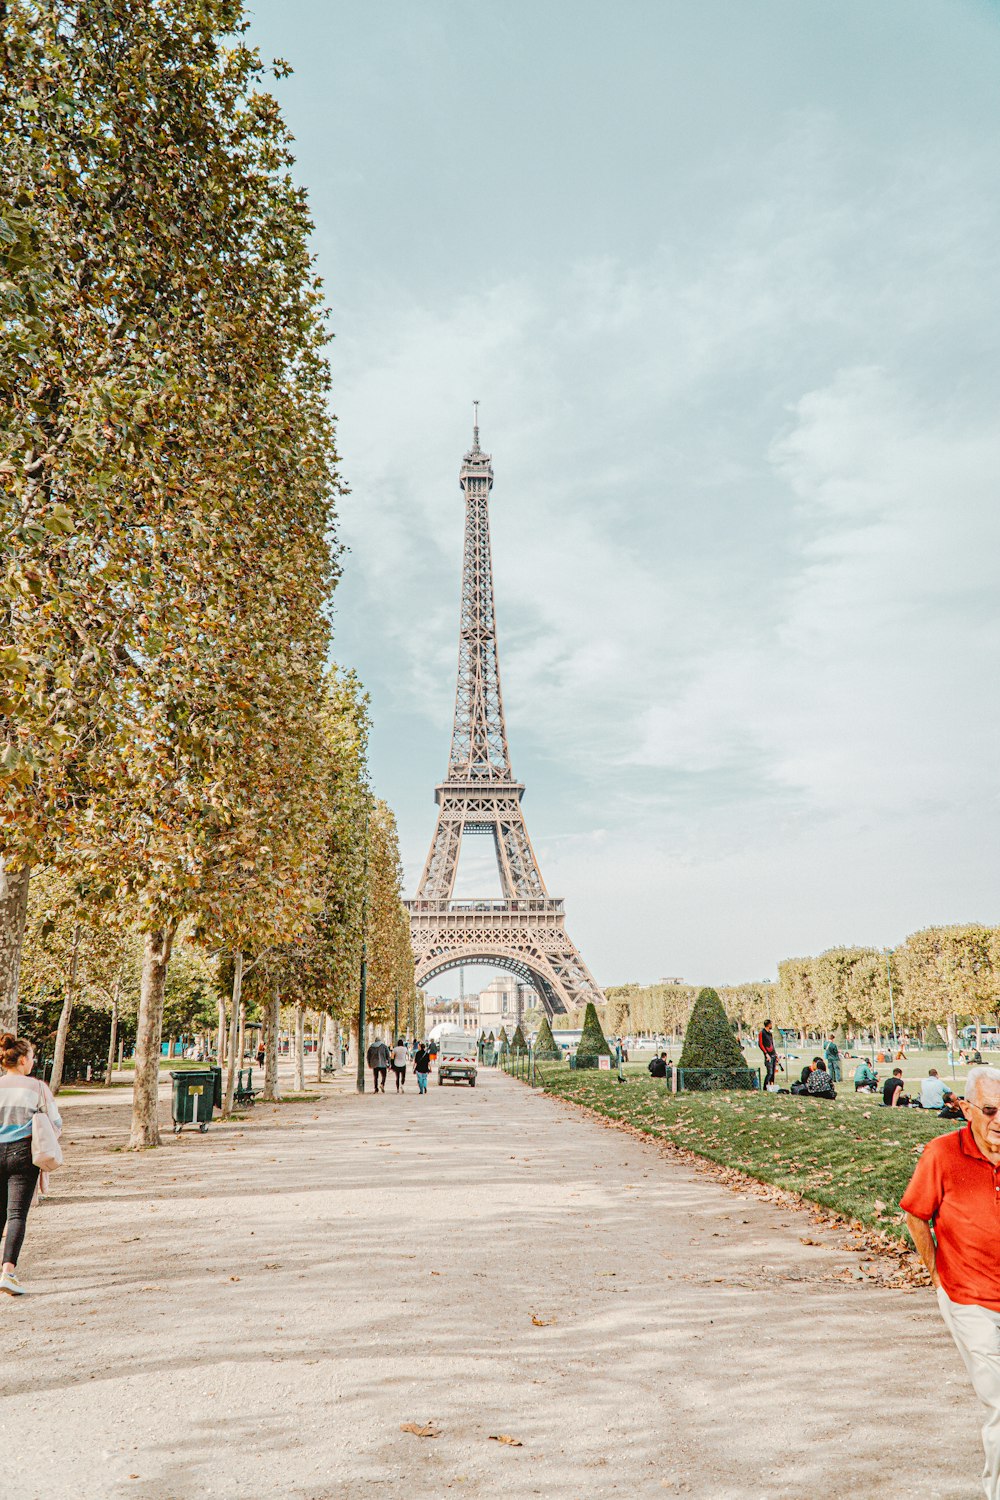 Persone che camminano sul marciapiede vicino alla Torre Eiffel durante il giorno